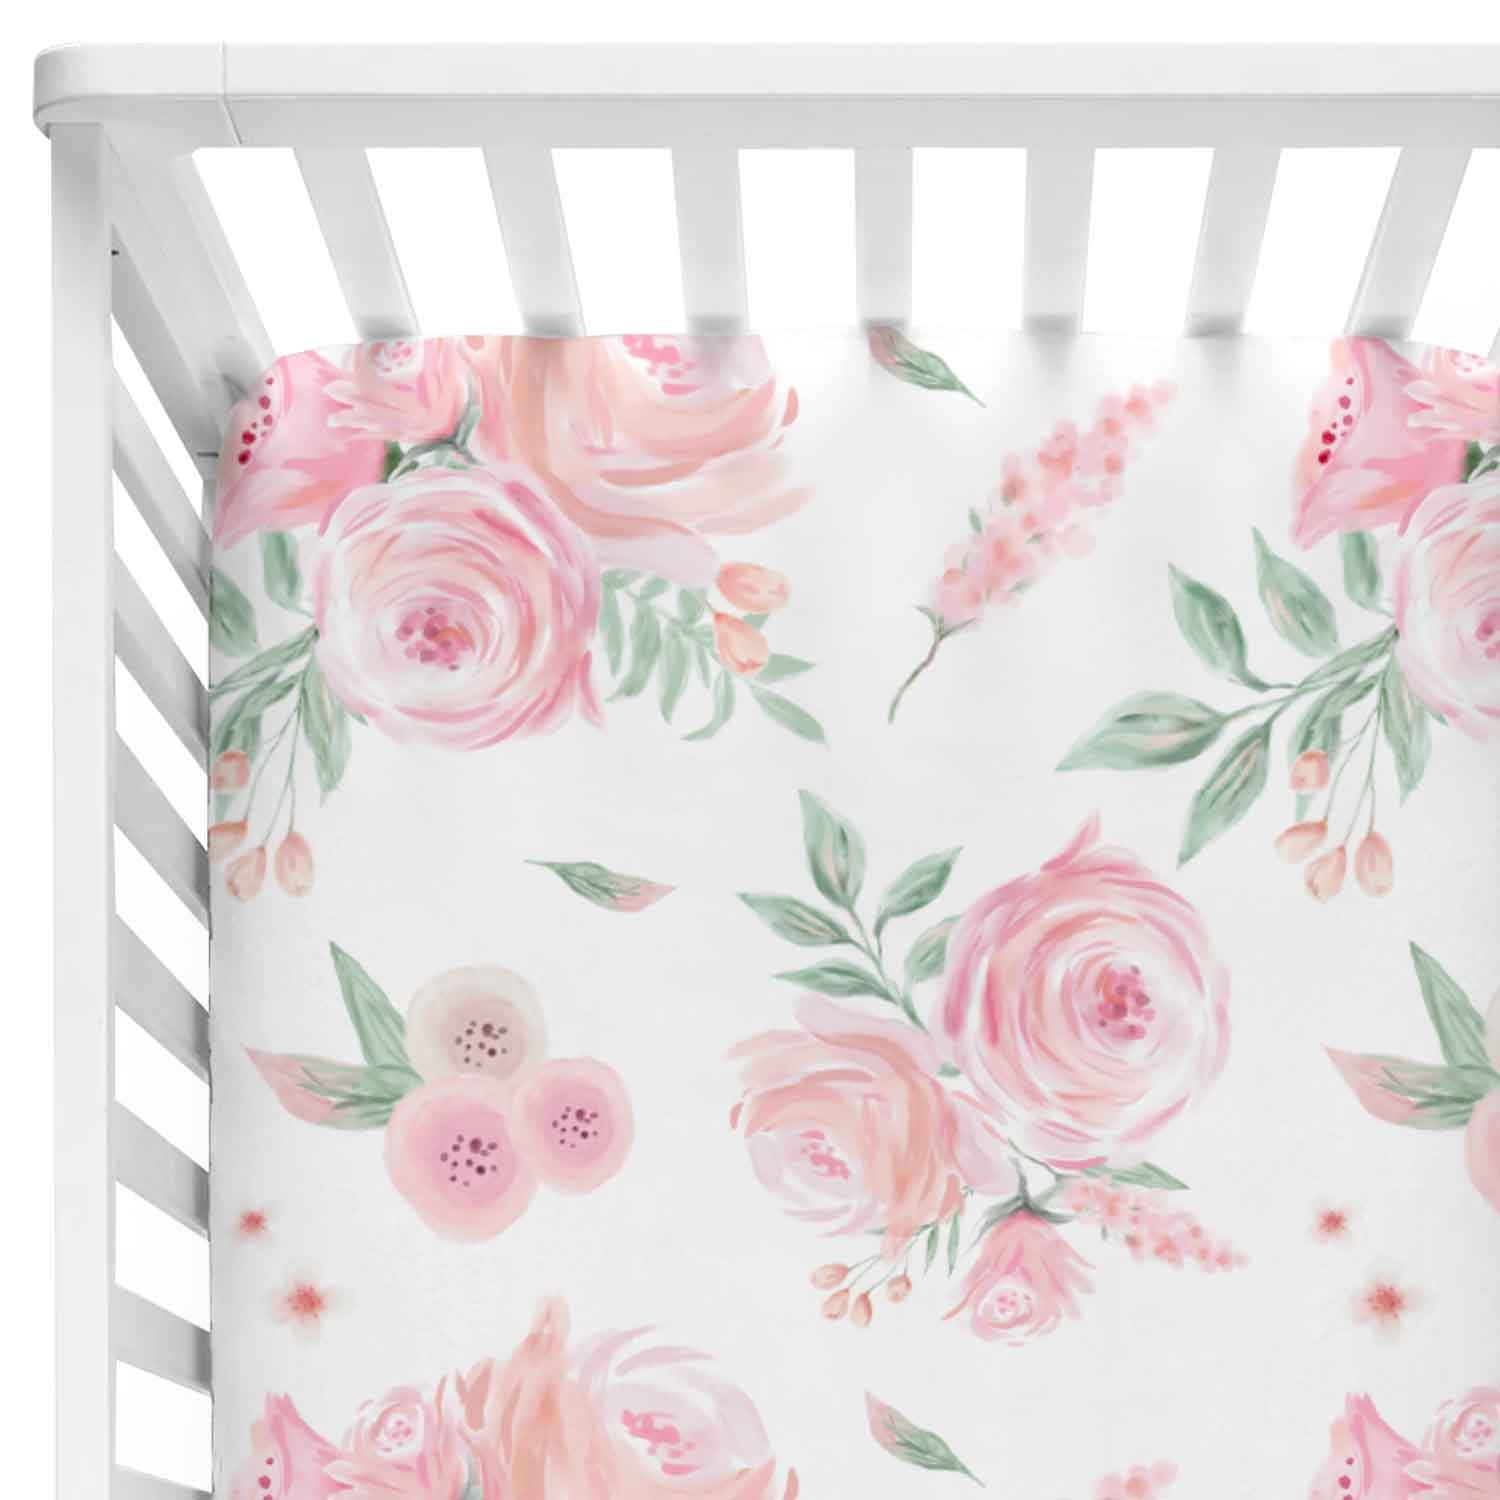 flower crib sheets